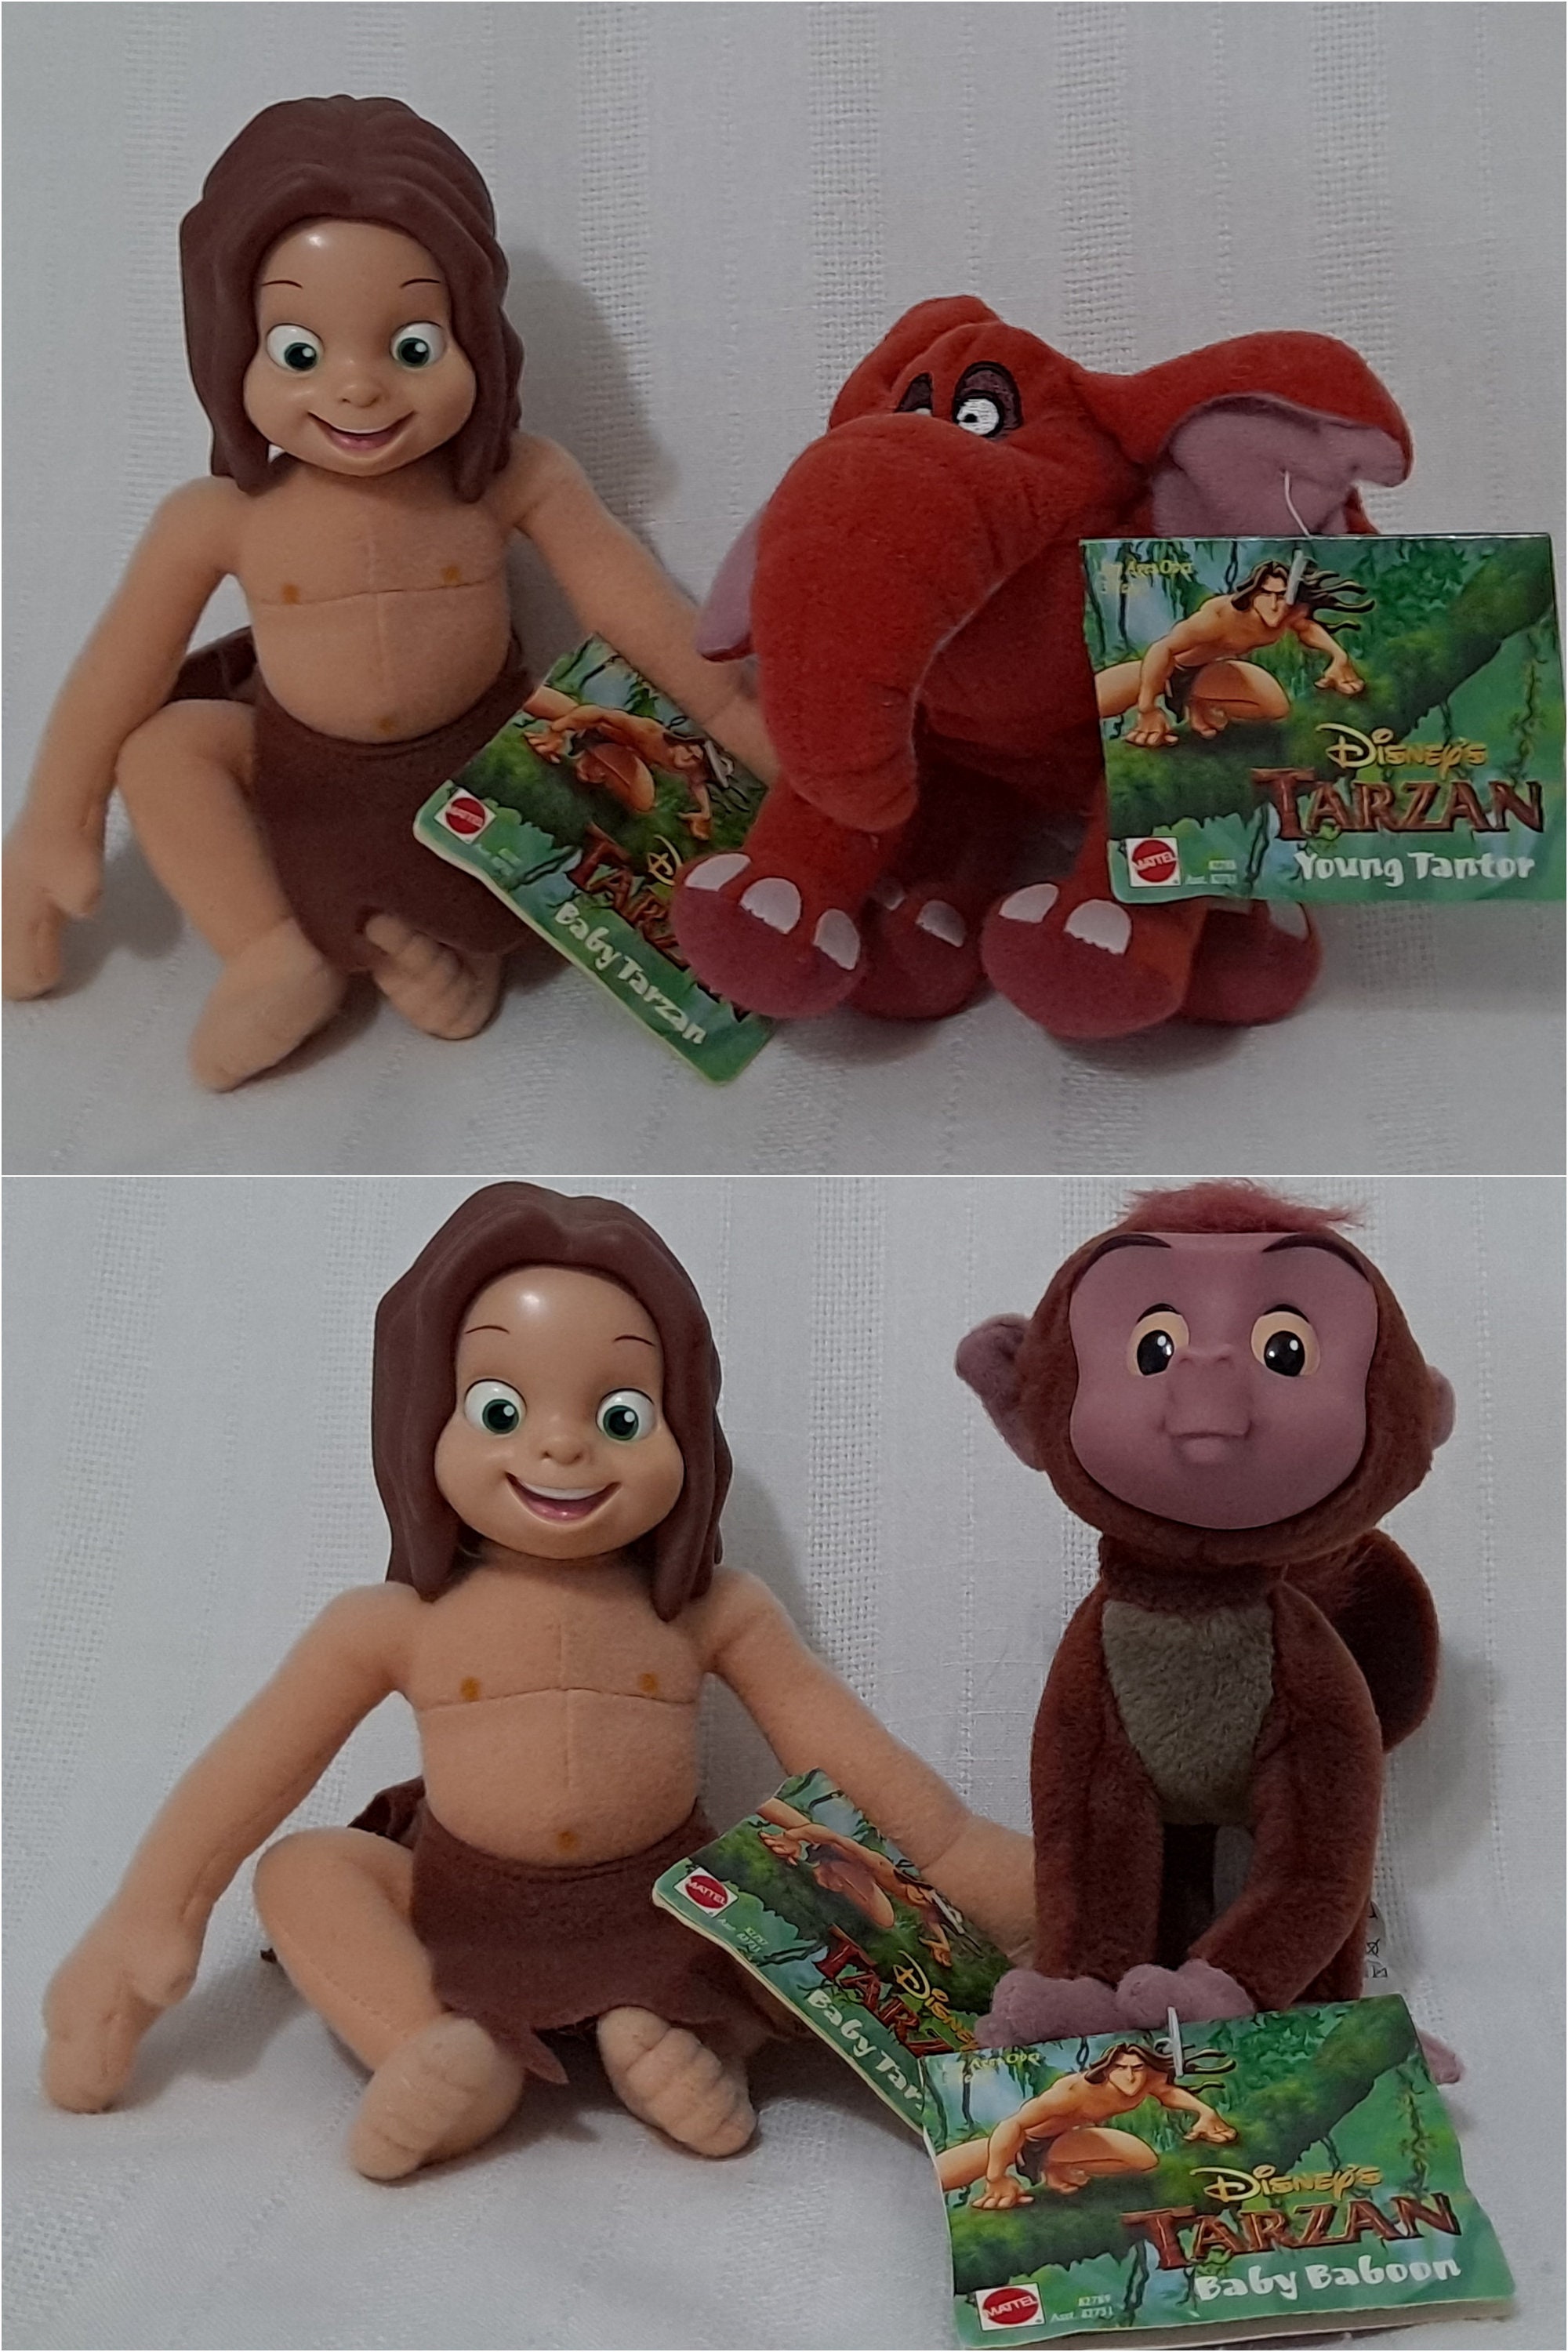 Tarzan Plush - Etsy